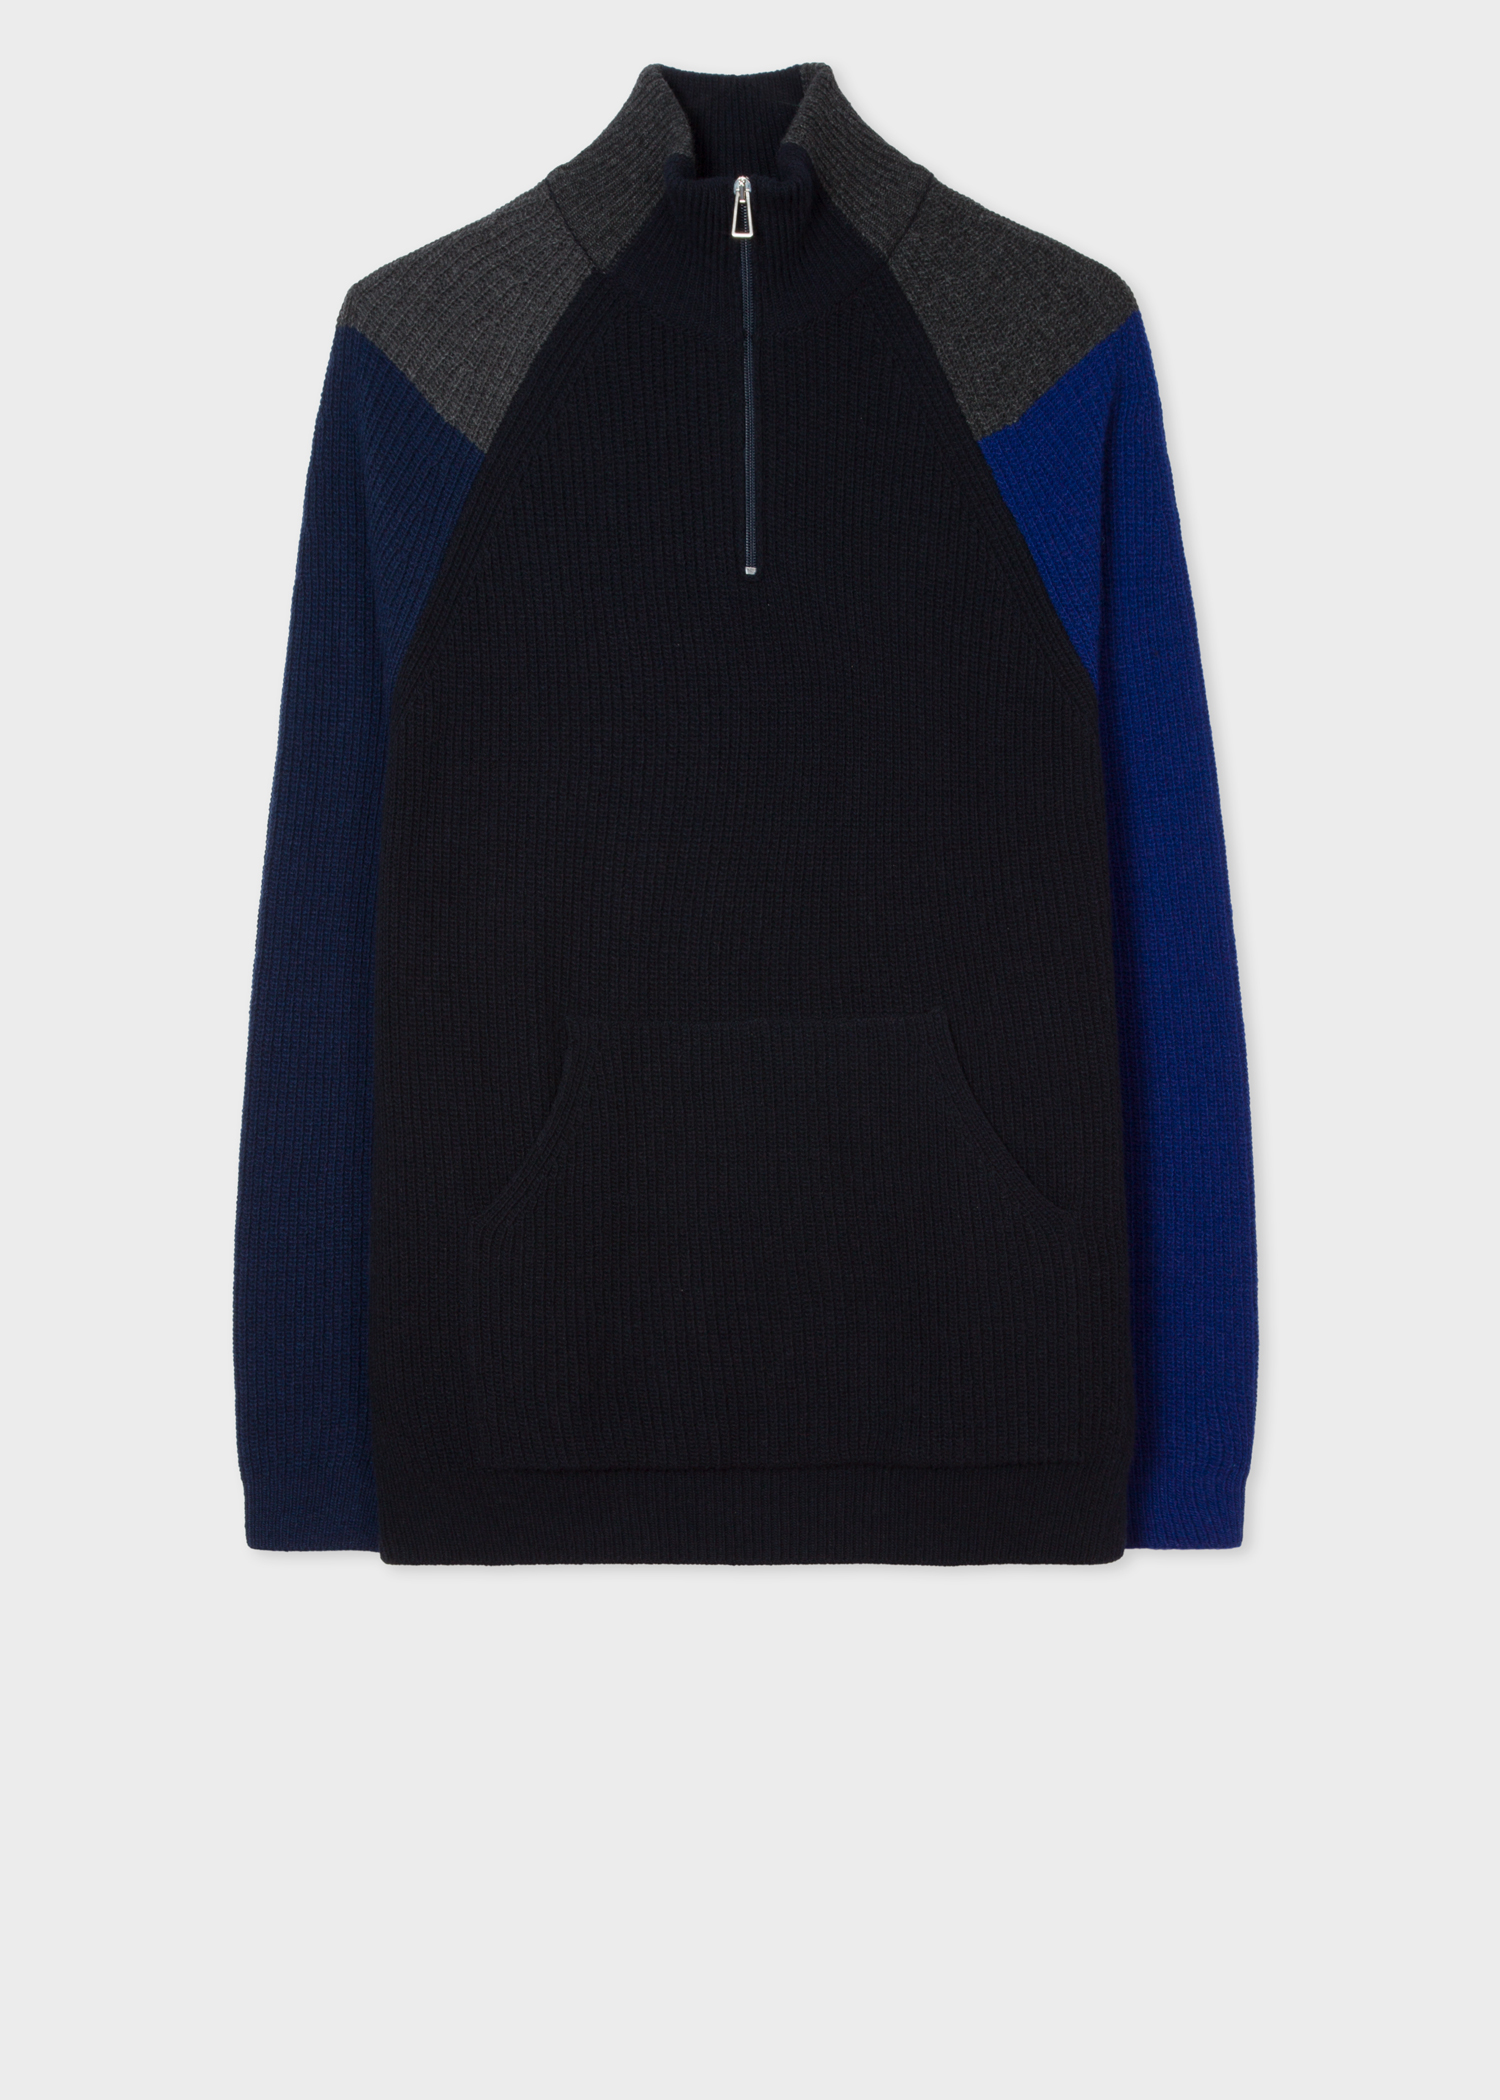 Front view - Men's Dark Navy Colour-Block Half-Zip Wool-Blend Sweater Paul Smith